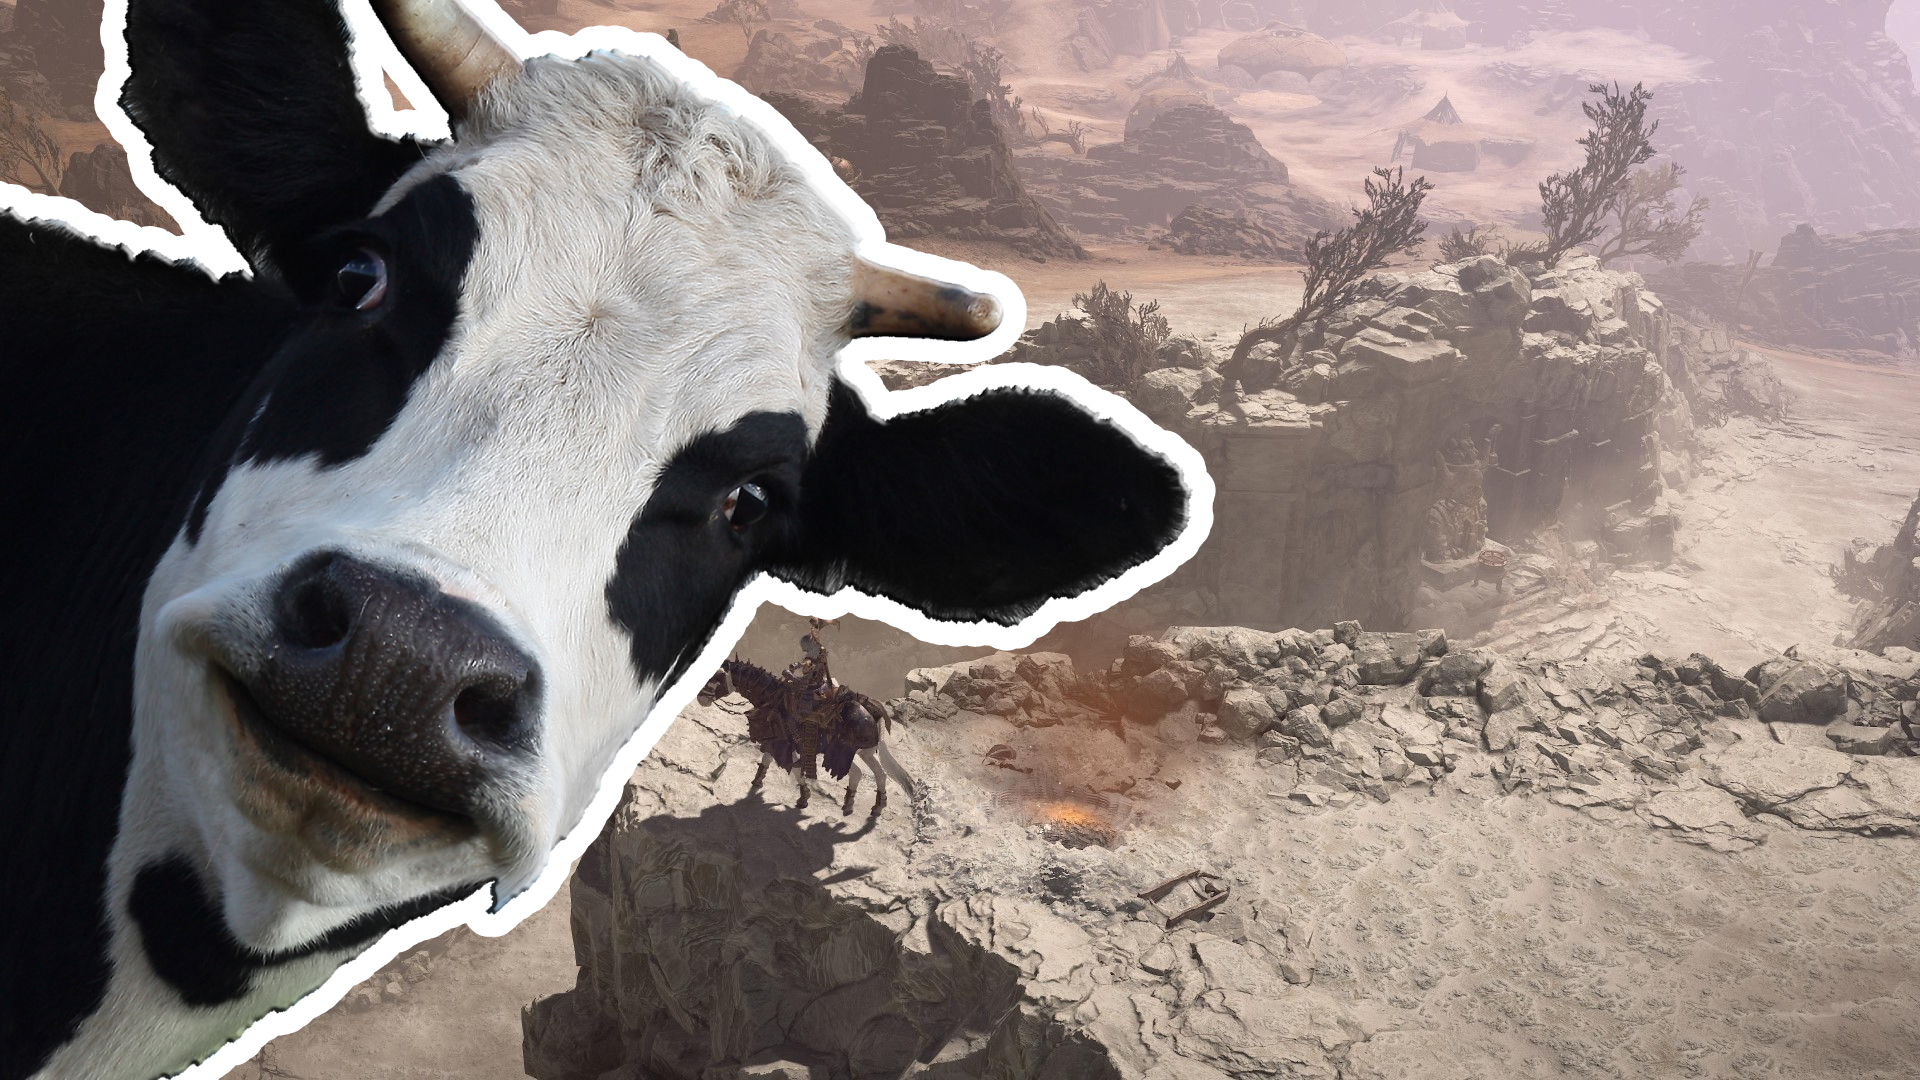 The hunt for Diablo 4’s secret cow level continues despite setbacks ...